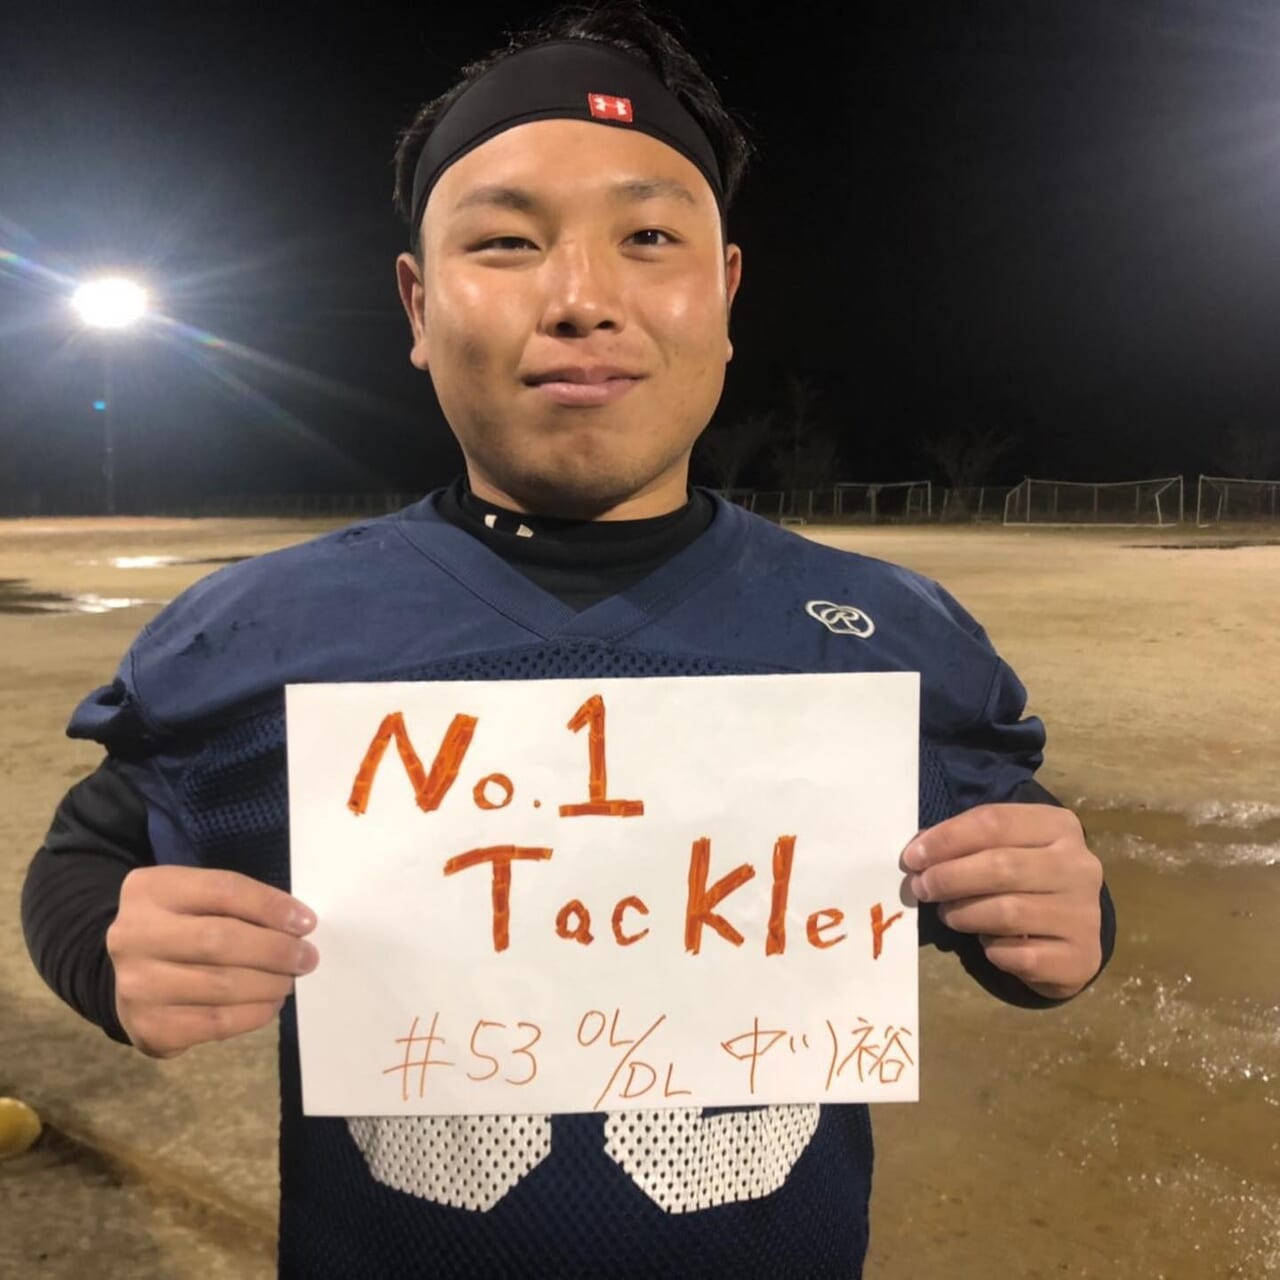 .
『No.1 Tackler』
4年 OL/DL 中川裕